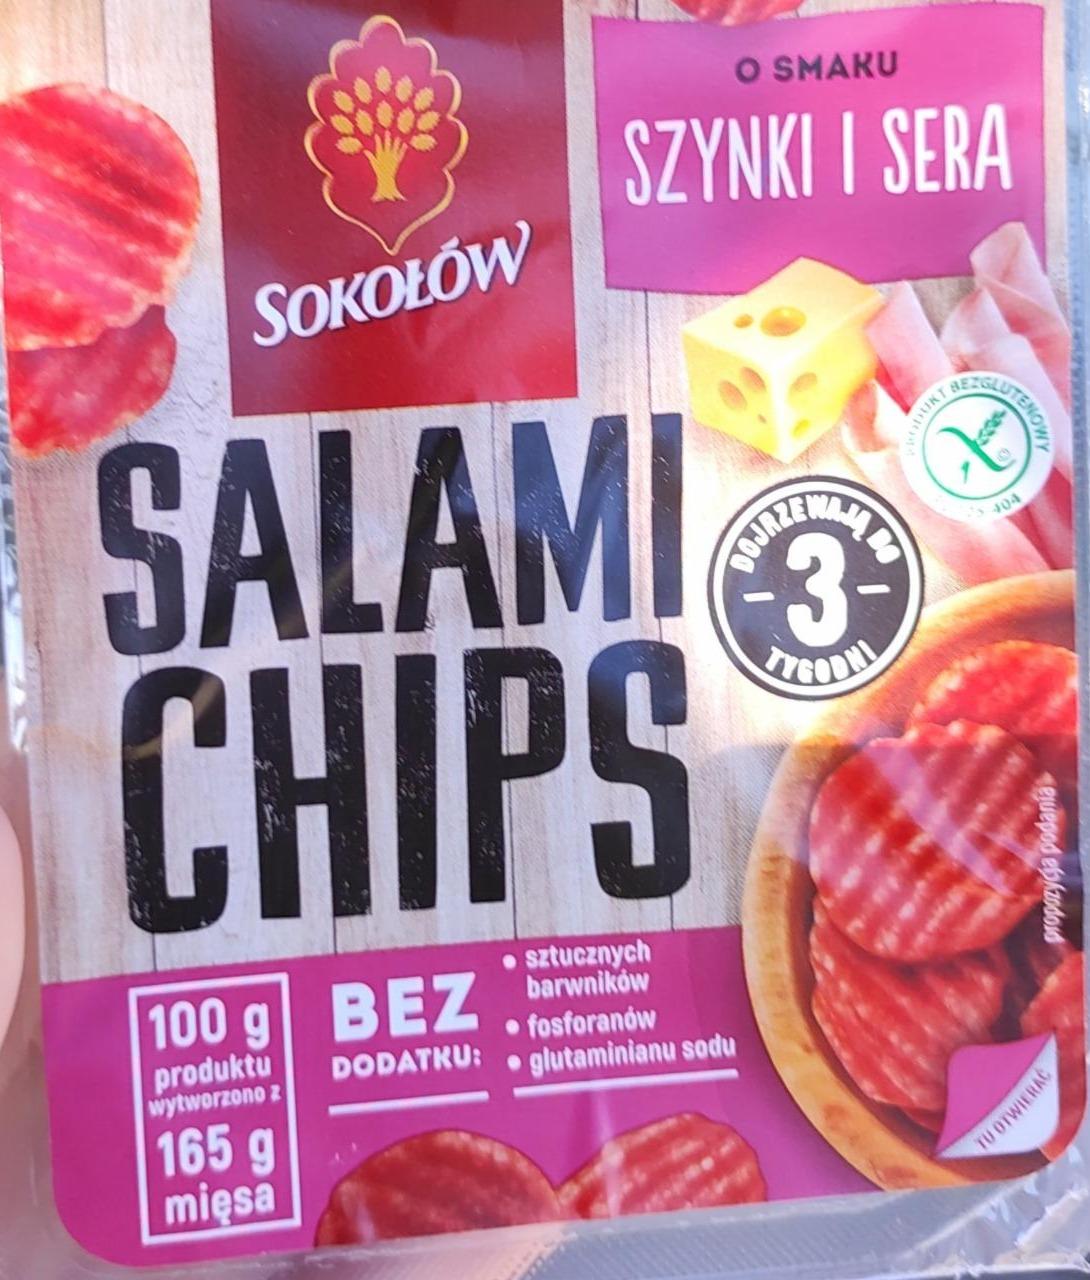 Zdjęcia - salami chips o smaku sera i szynki Sokołów